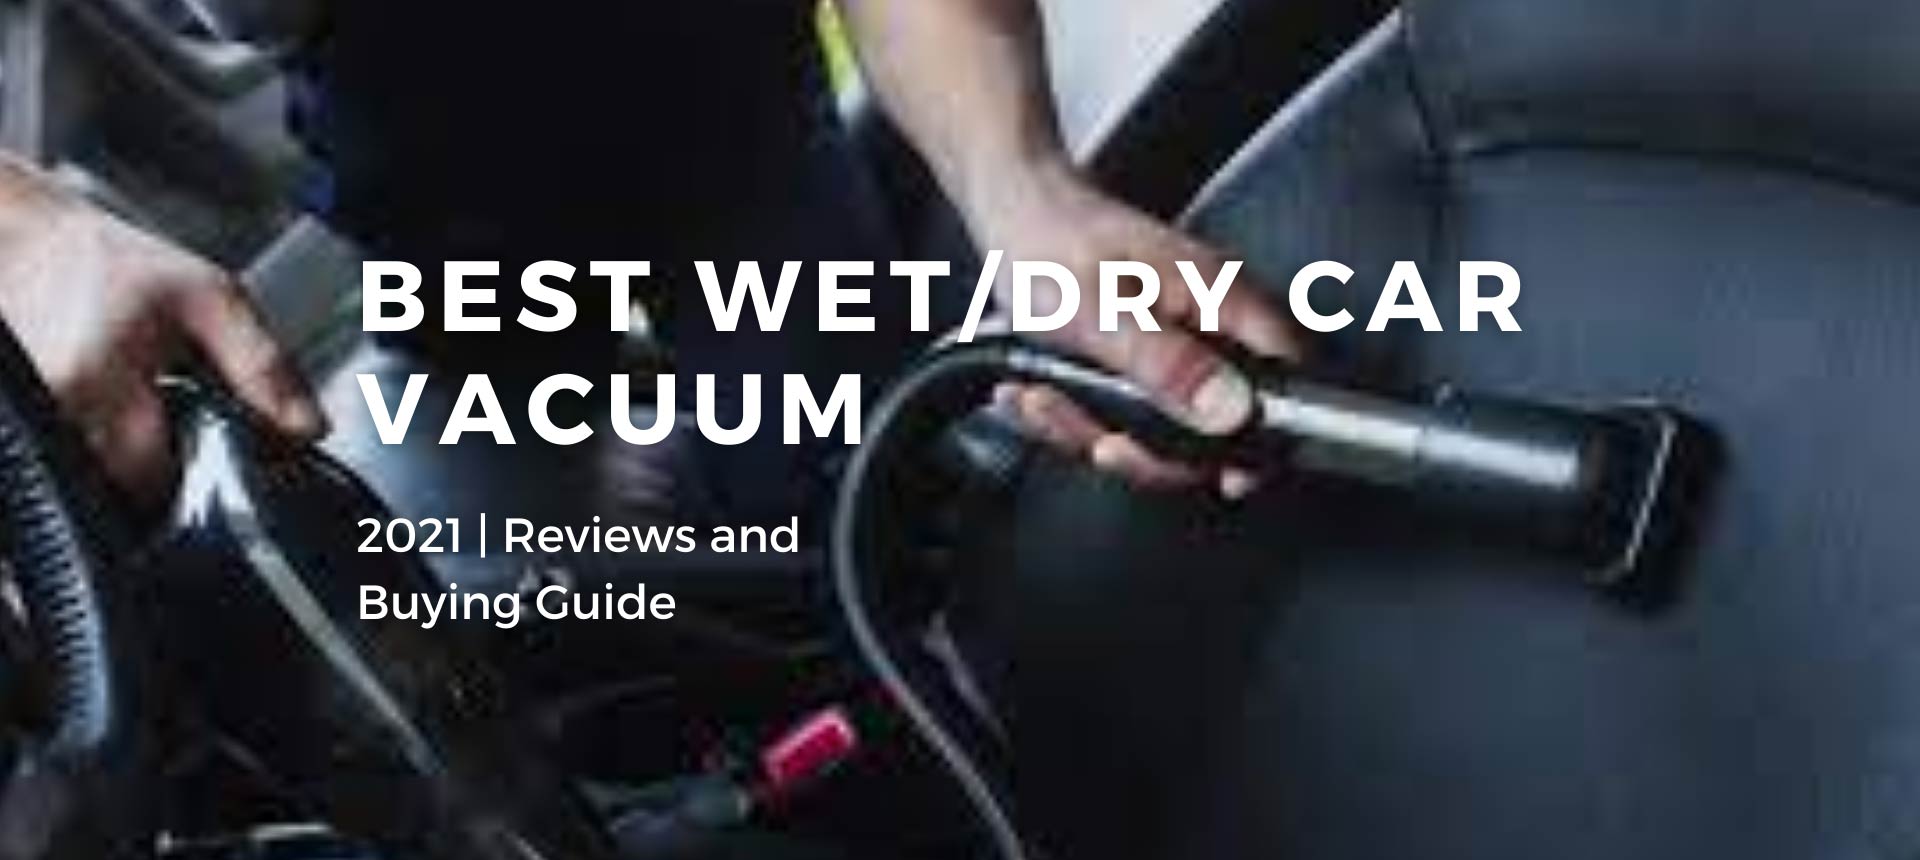 Best Wet/Dry Car Vacuum 2021